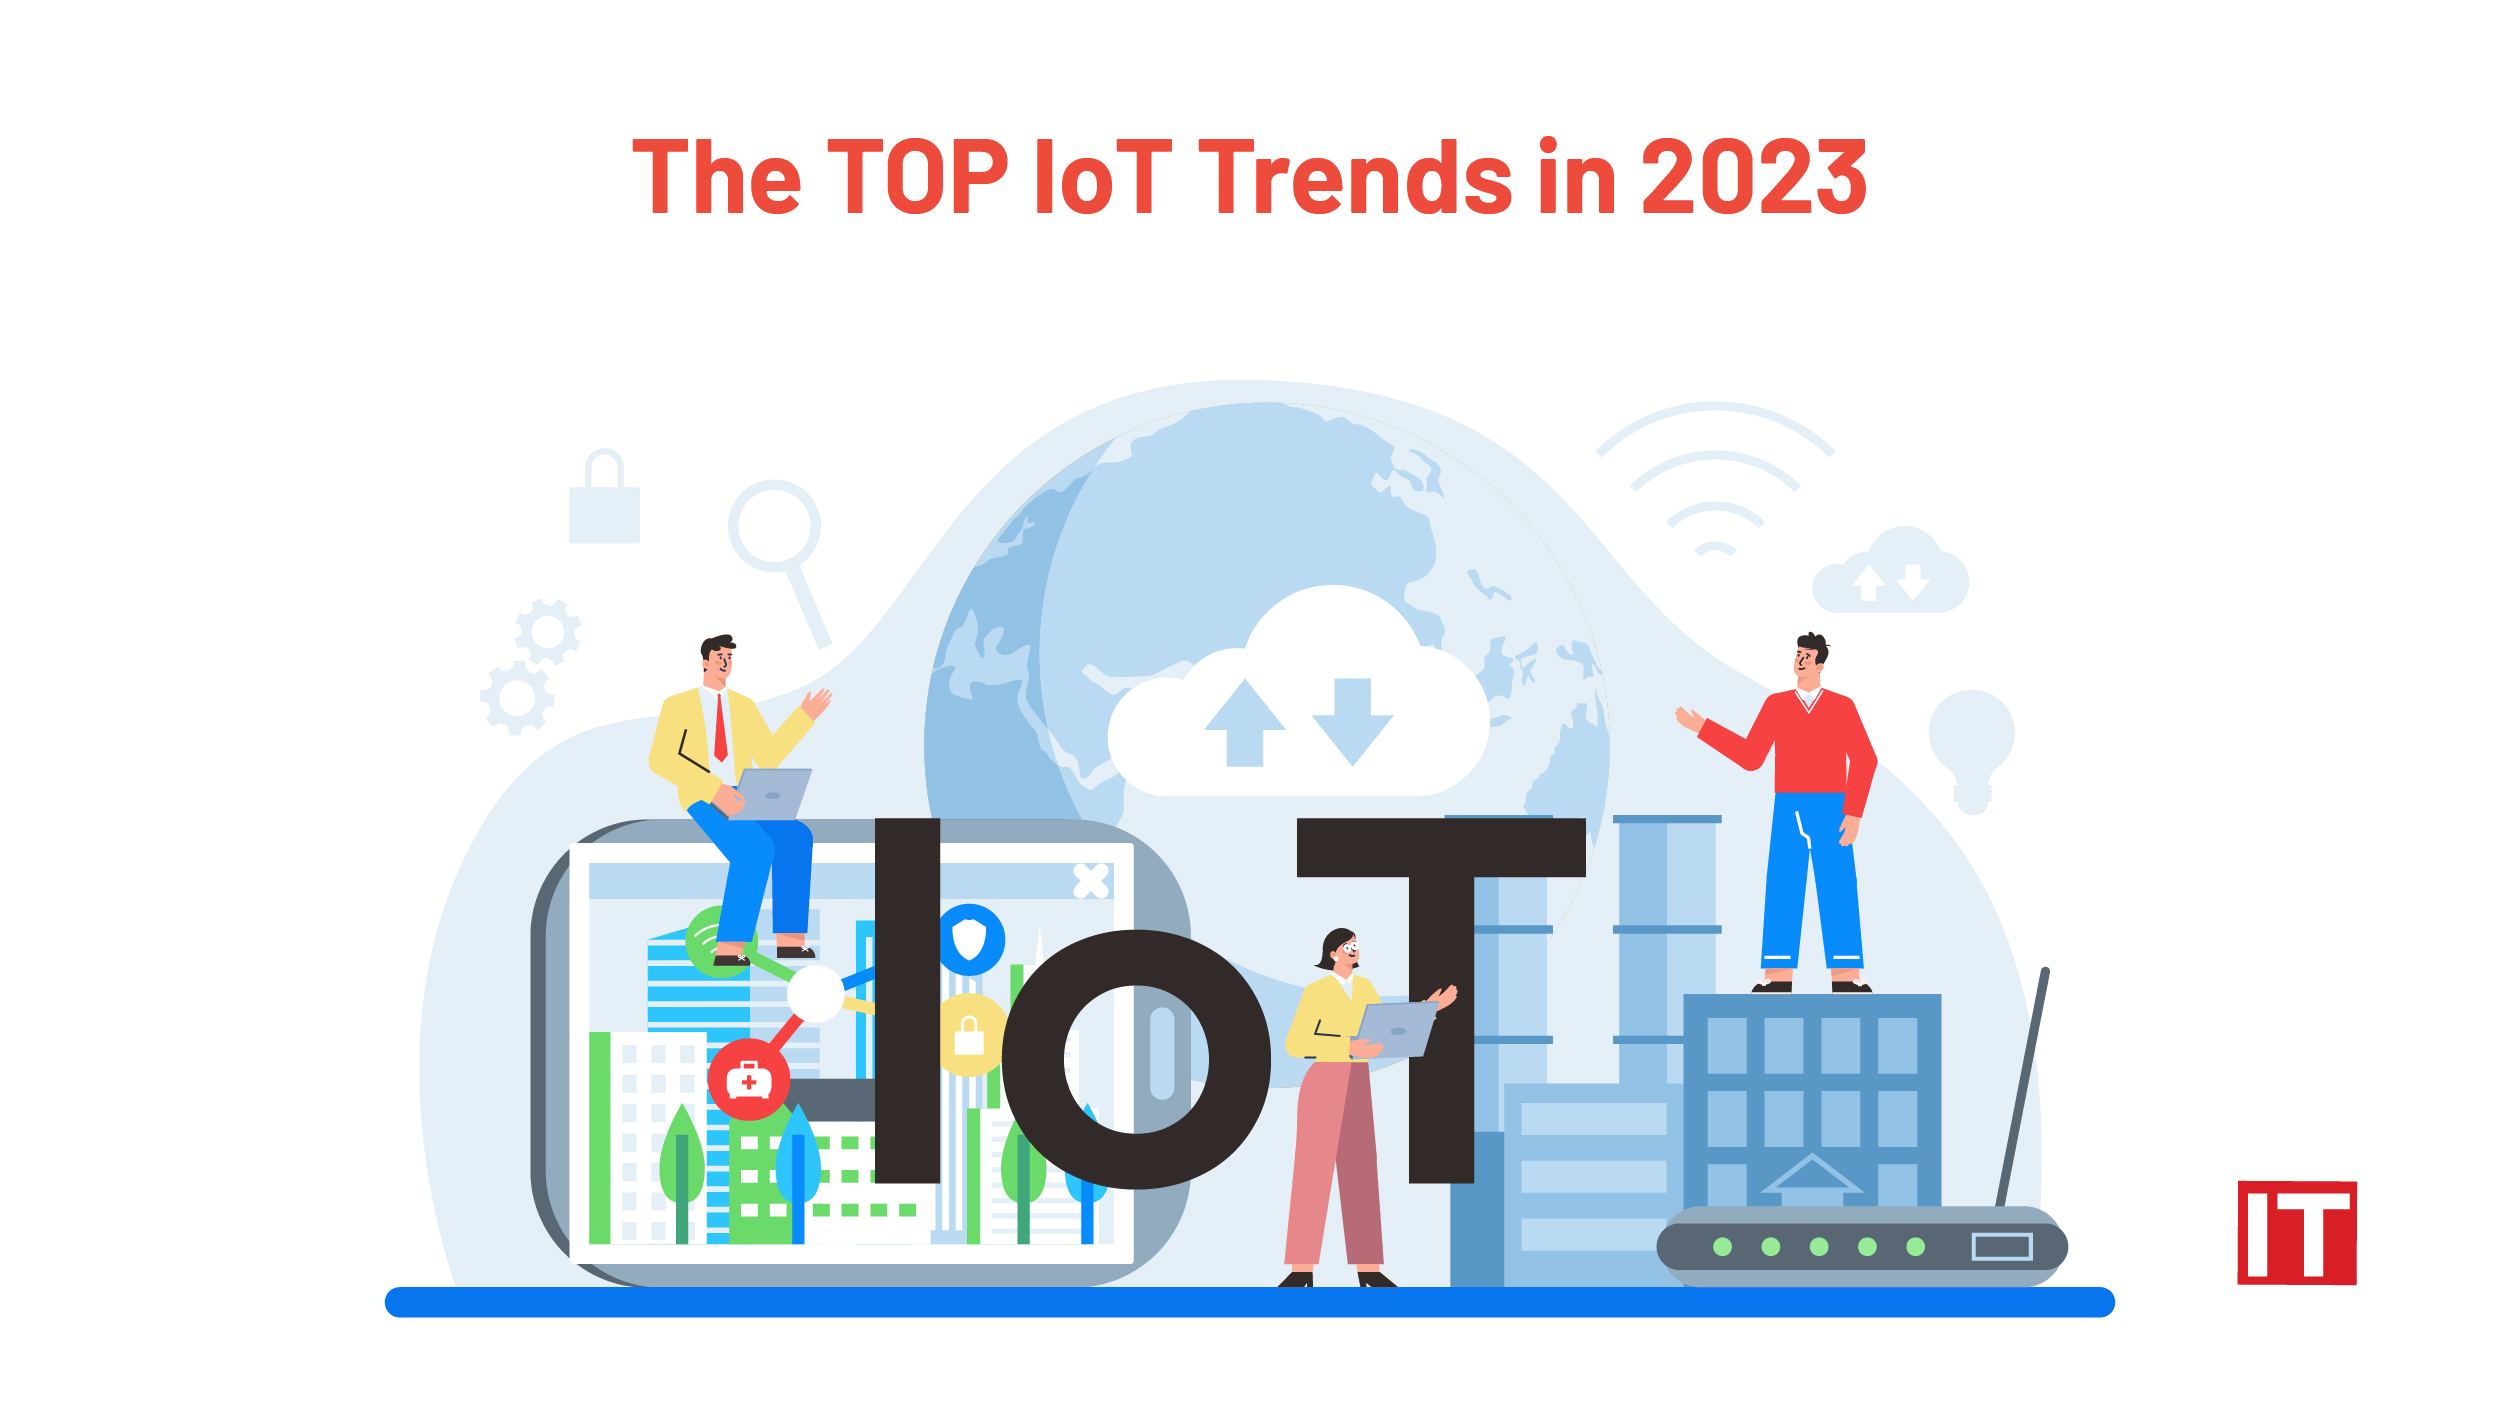 Top IoT trends in 2023